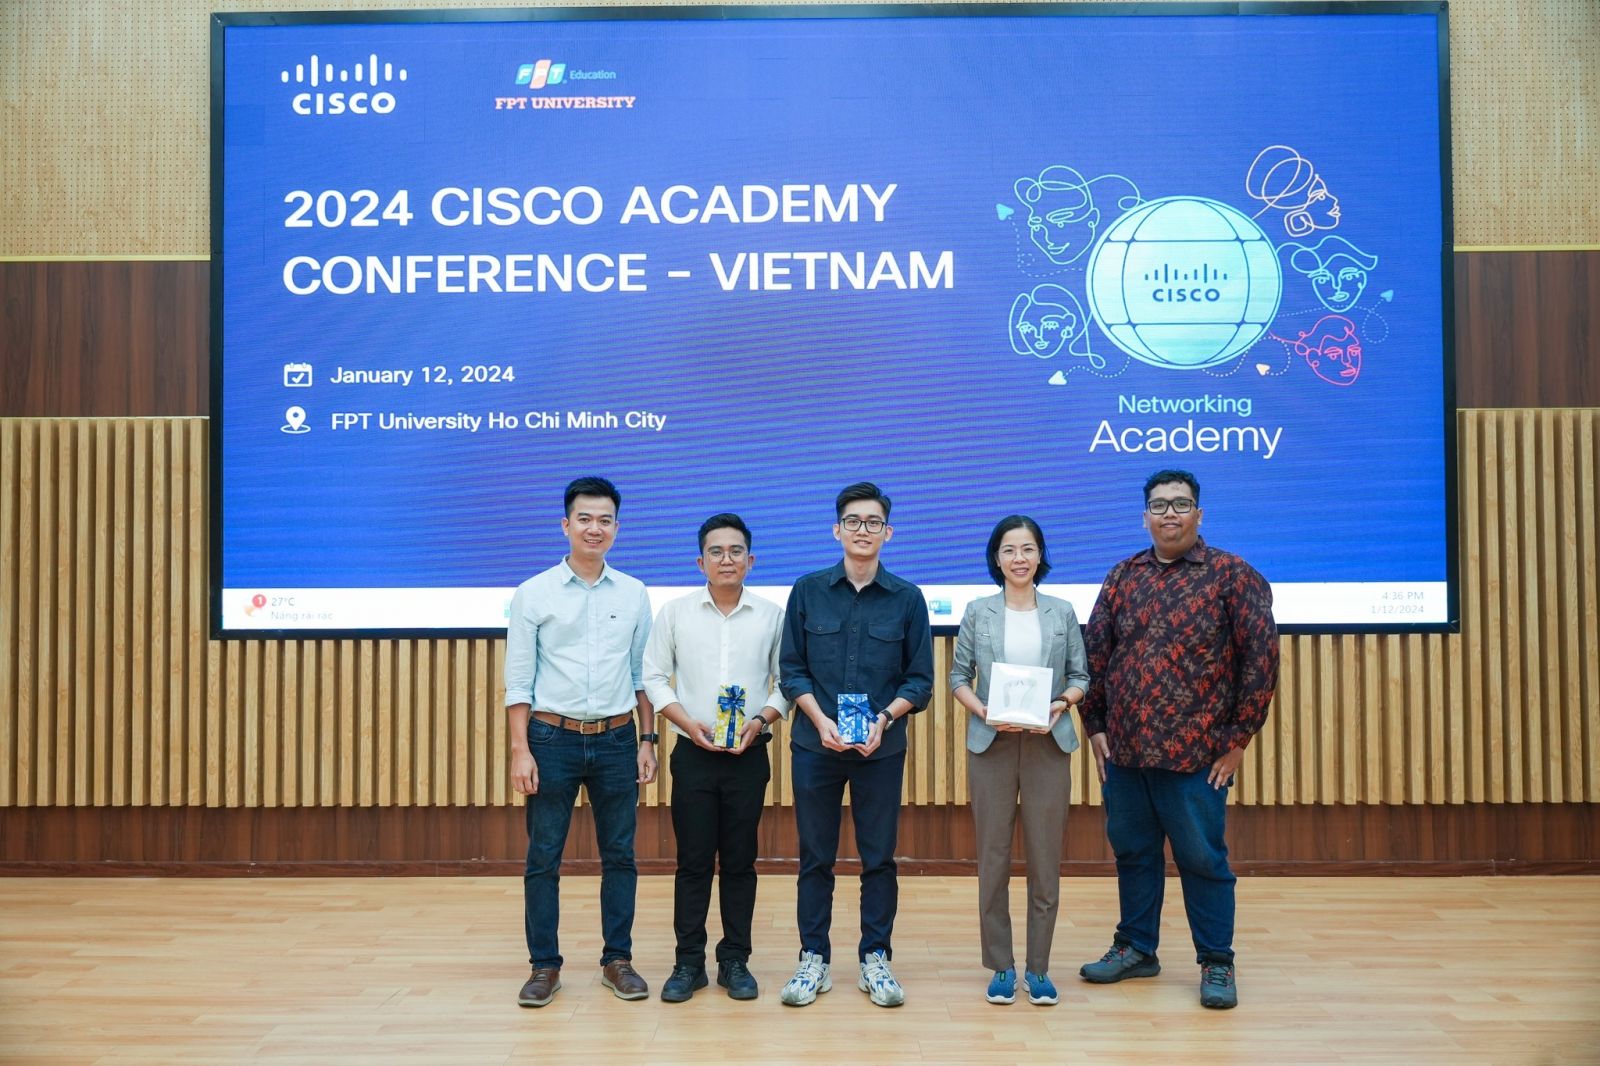 Trưởng bộ môn mạng và Hệ thống của BKACAD nhận giải thưởng Cisco